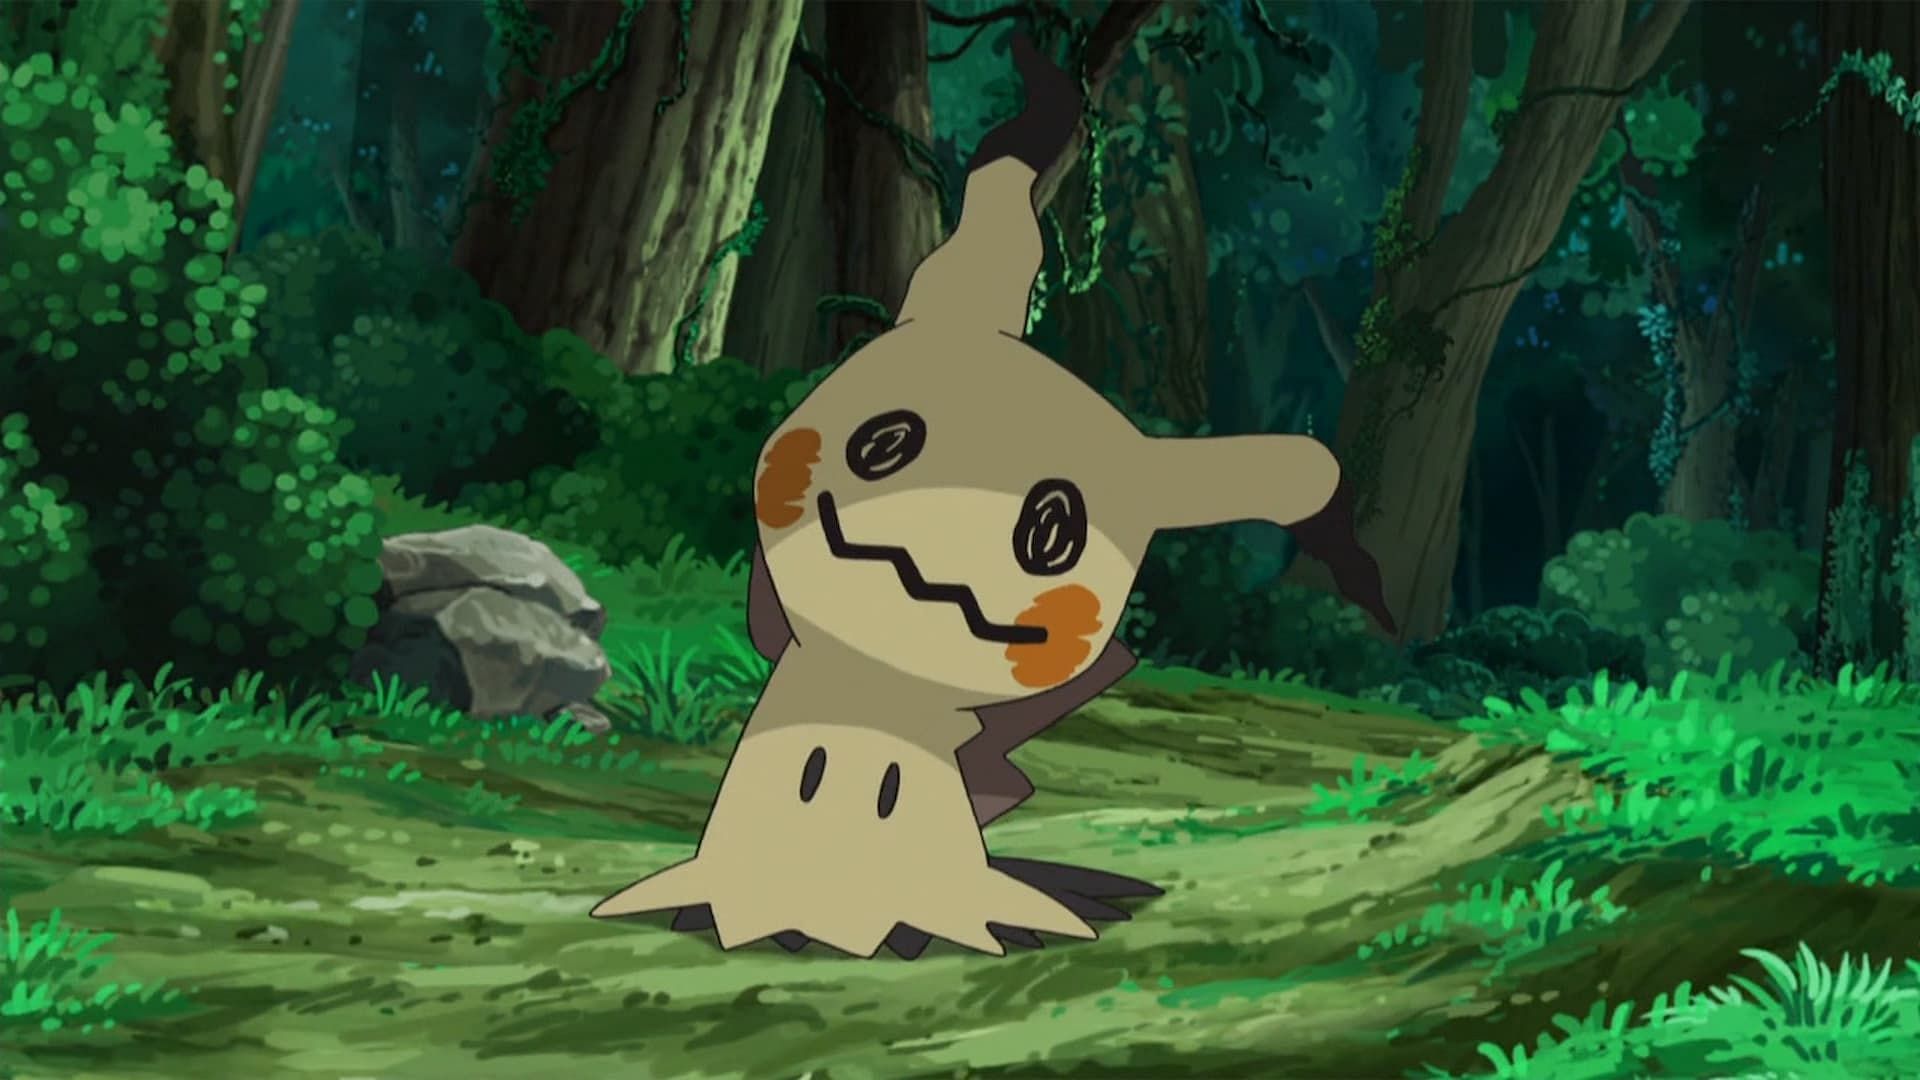 Generation 7 - Mimikyu (Image via The Pokemon Company)